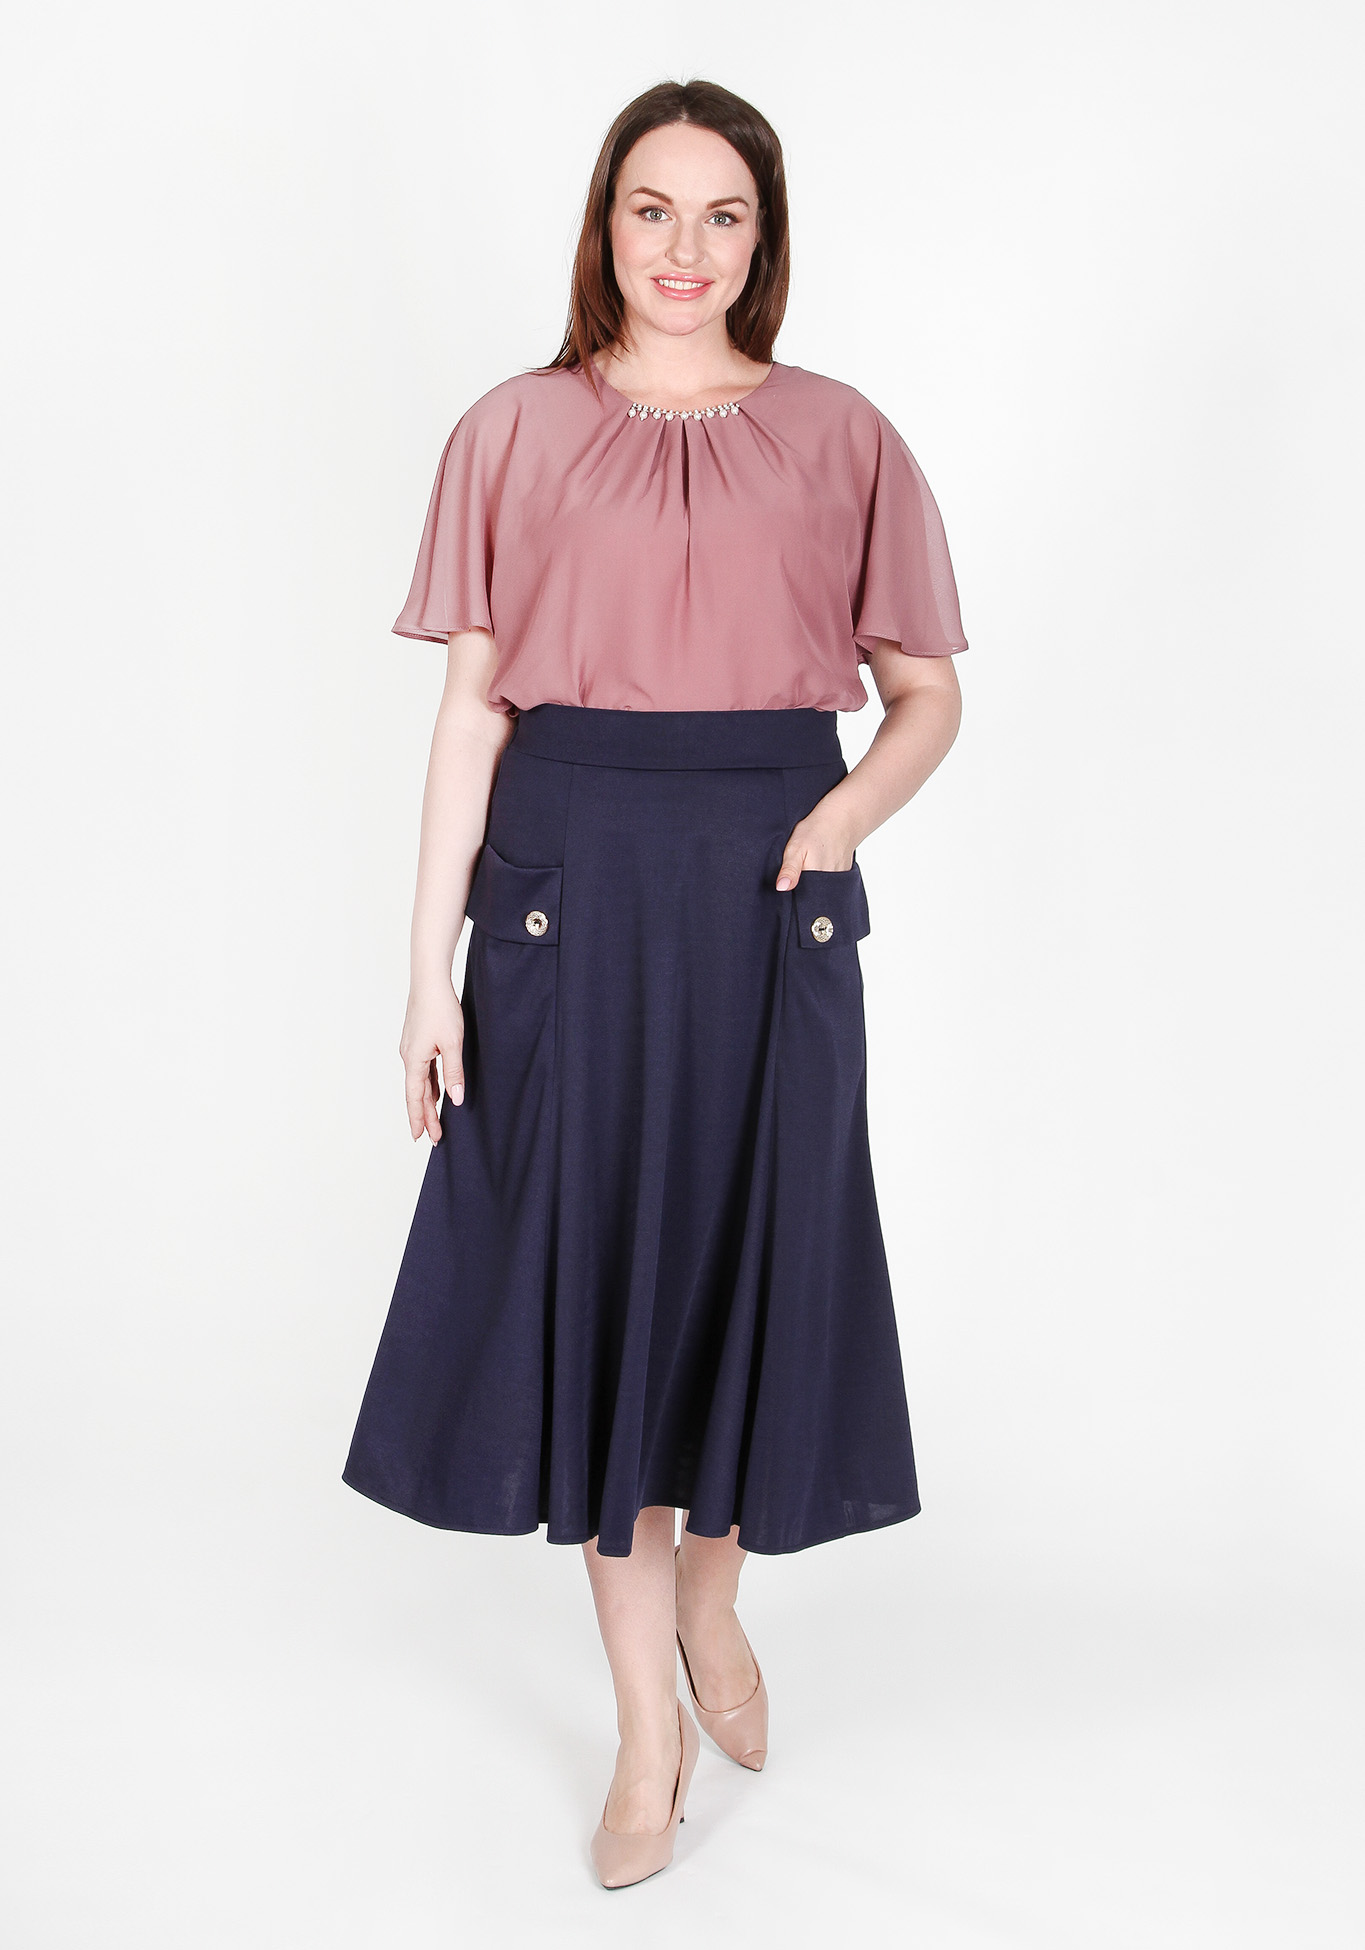 Блуза «Романтичный образ» Zanzara, размер 50, цвет пудровый - фото 2